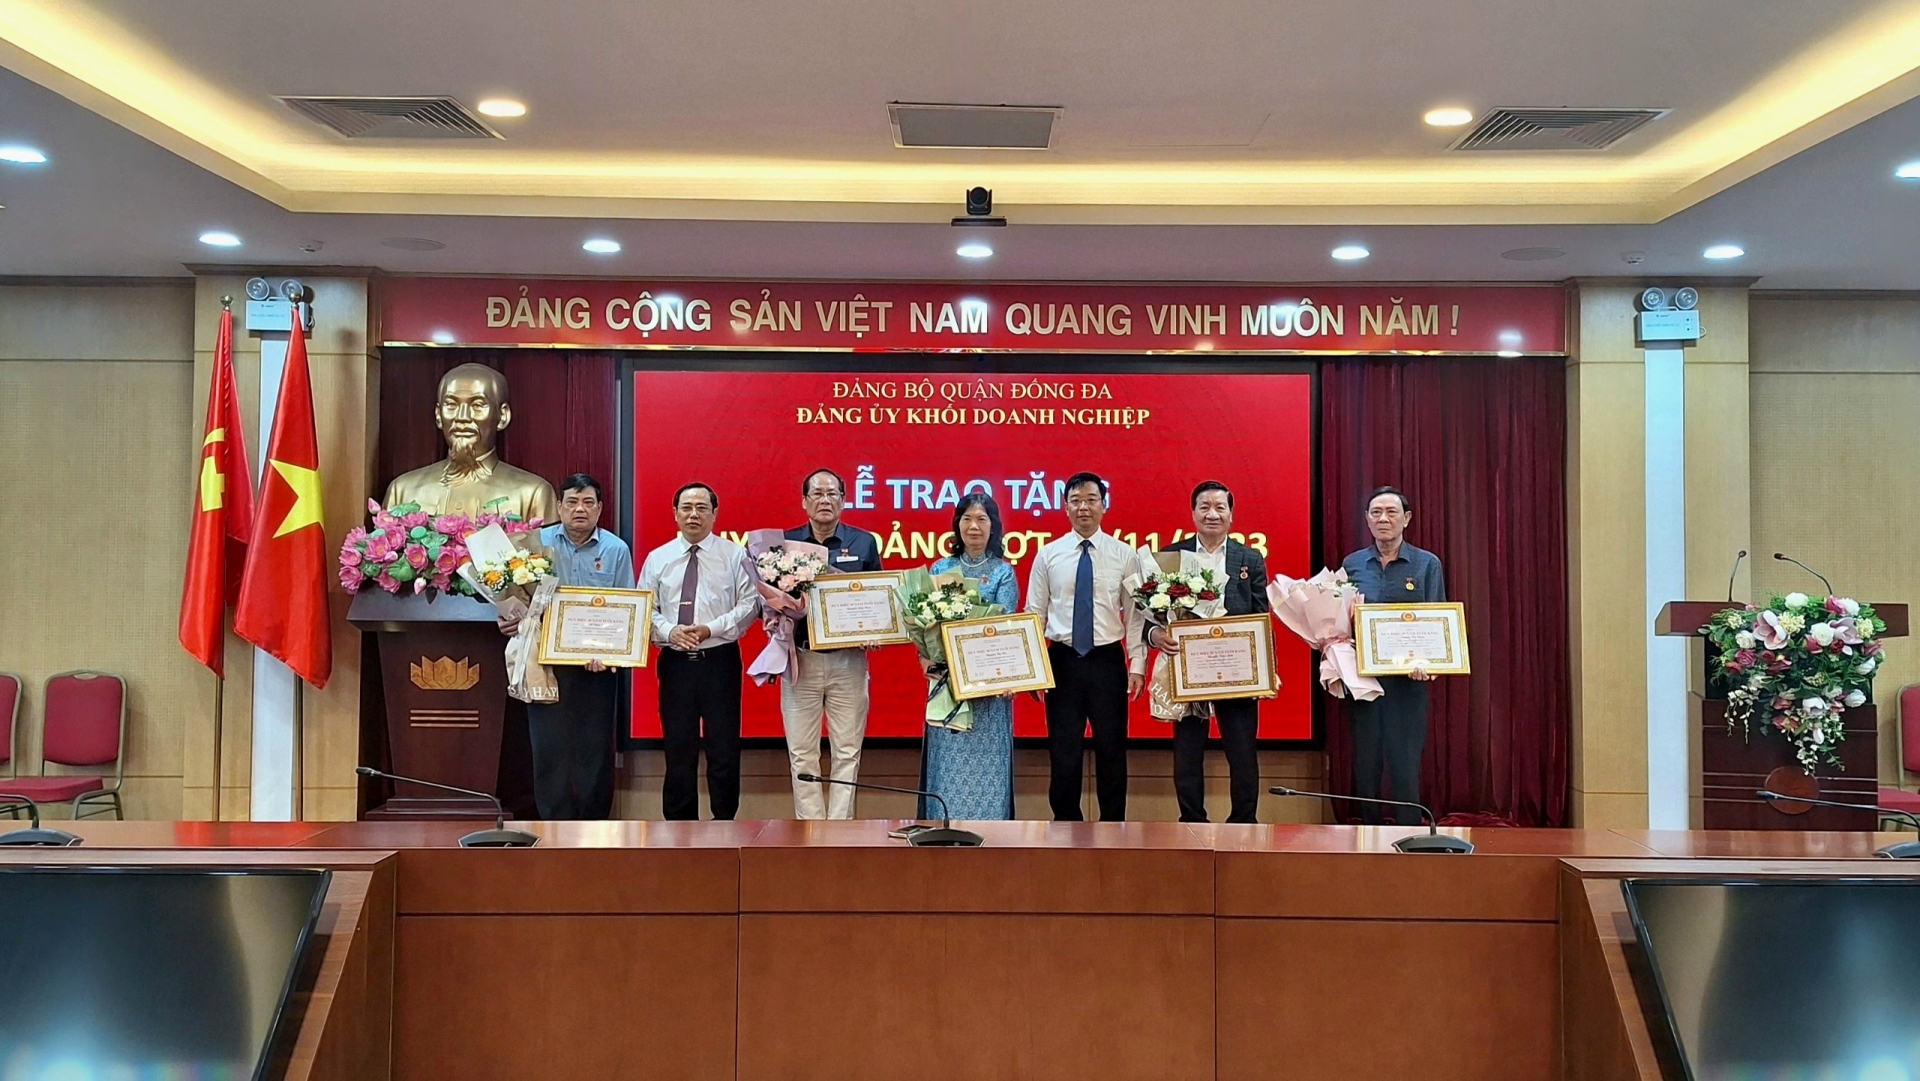 Đồng chí Vũ Mạnh Chiến và đồng chí Nguyễn Văn Quang trao và tặng hoa chúc mừng các đồng chí Đảng viên được nhận Huy hiệu Đảng đợt 7/11/2023